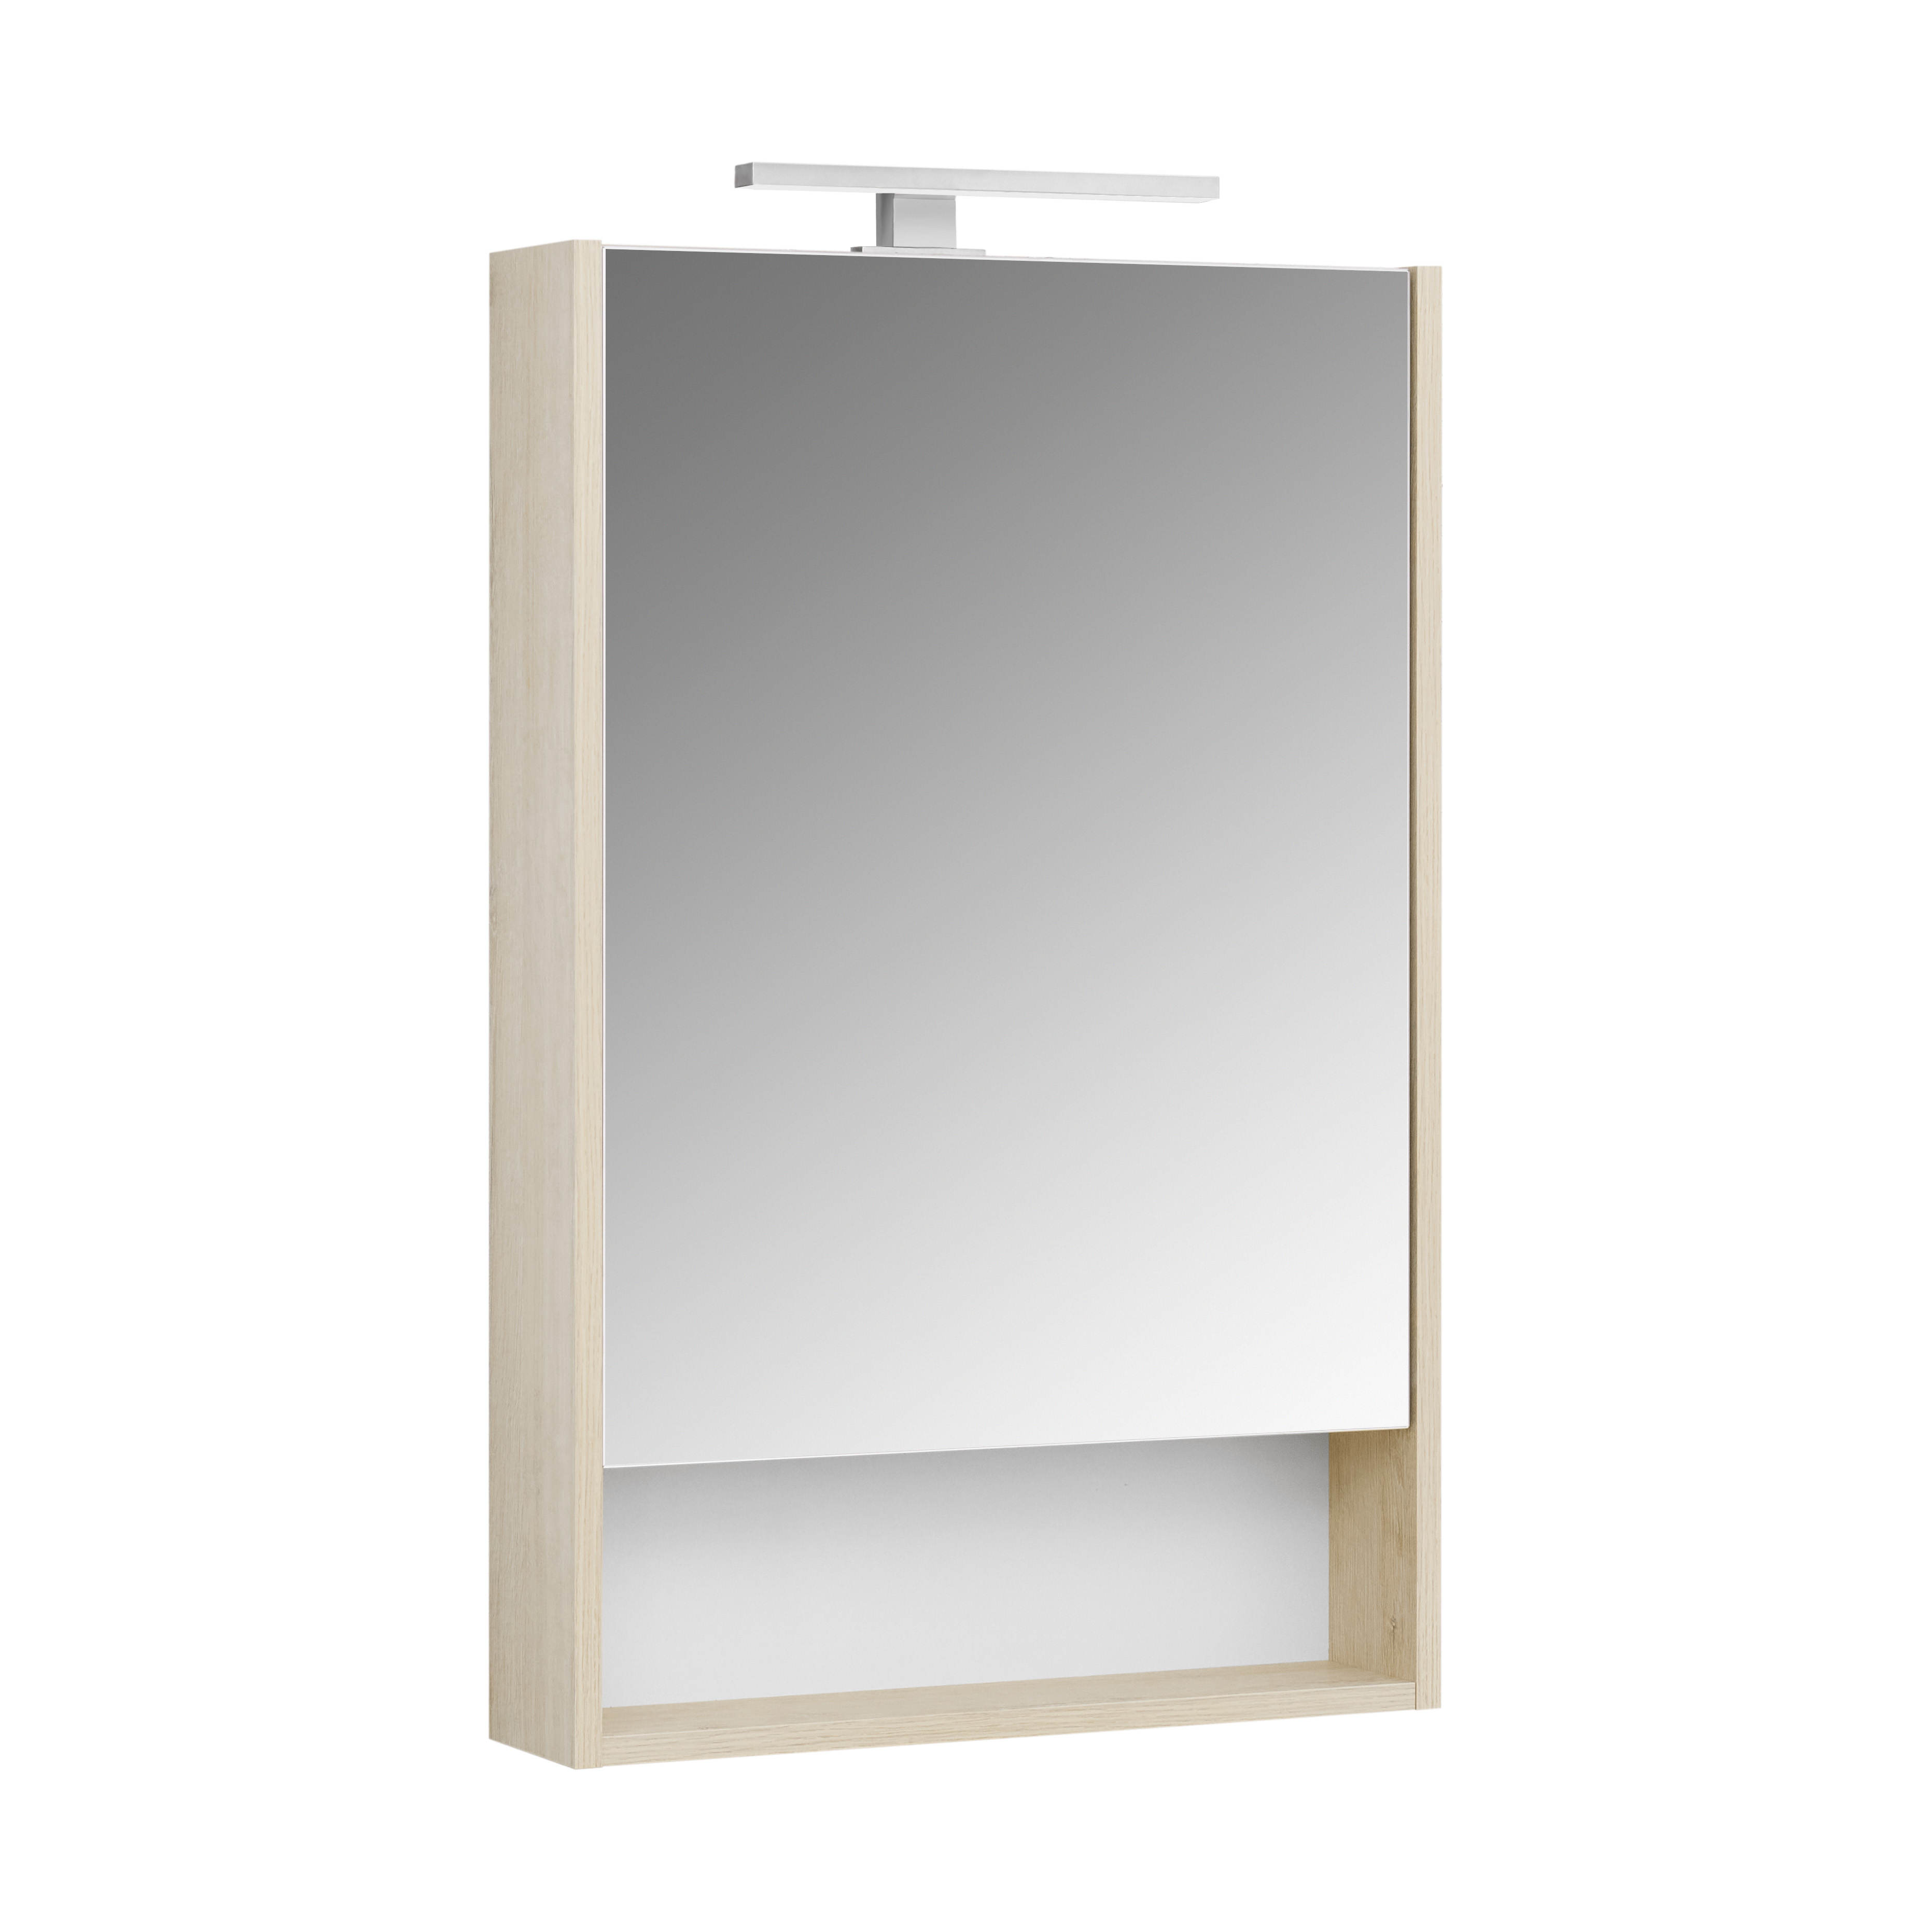 Зеркальный шкаф Акватон Сканди 1A252102SDB20 55 см, белый - фото 3